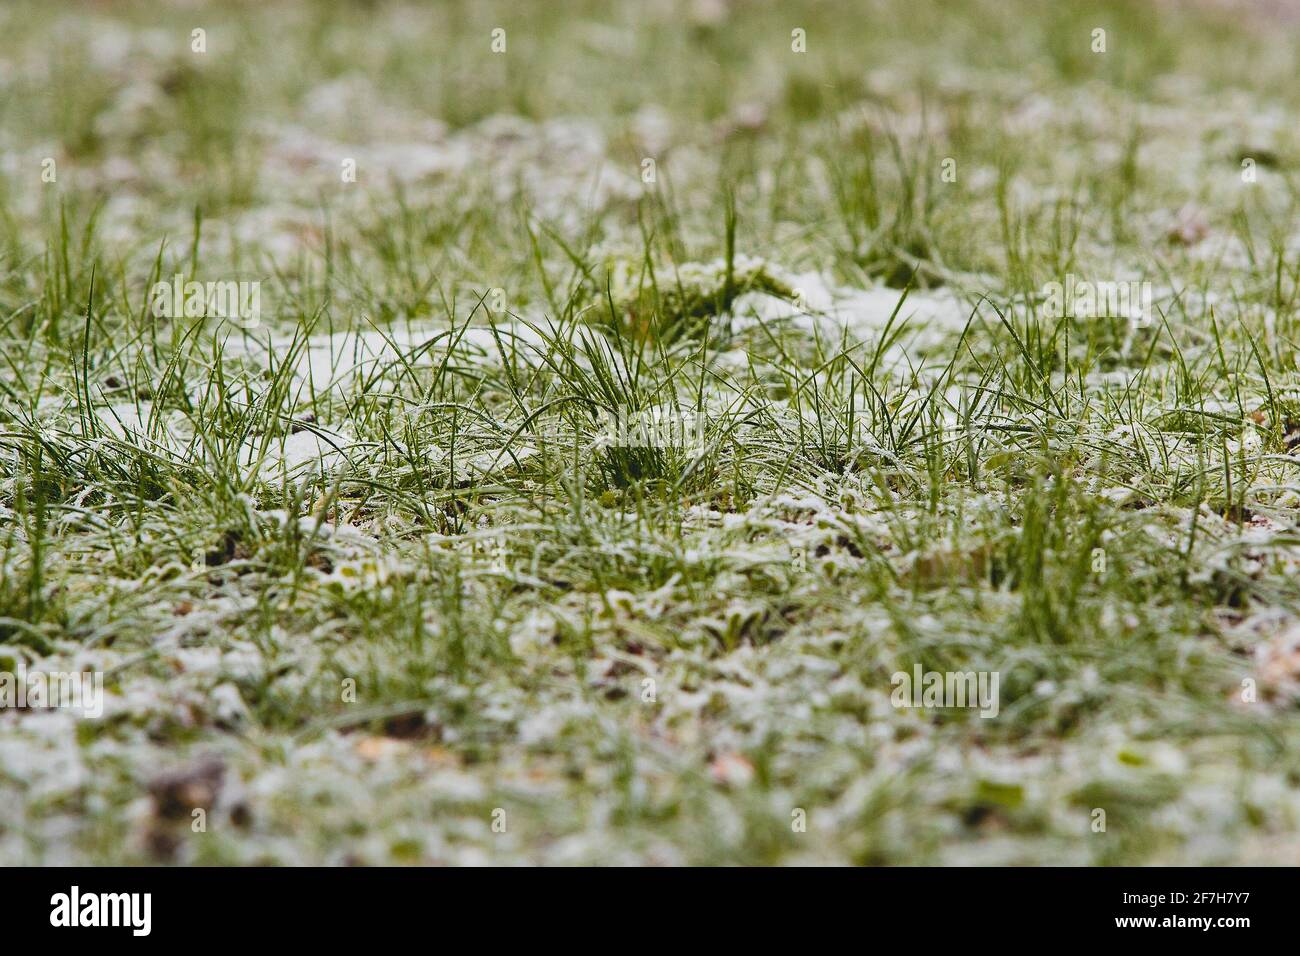 Eine Froschansicht von grünem Gras mit Flecken von Schnee und Frost dazwischen. Niedrige Sicht auf ein schneebedecktes Gras. Gras durchdringt eine dünne Schneeschicht. Stockfoto